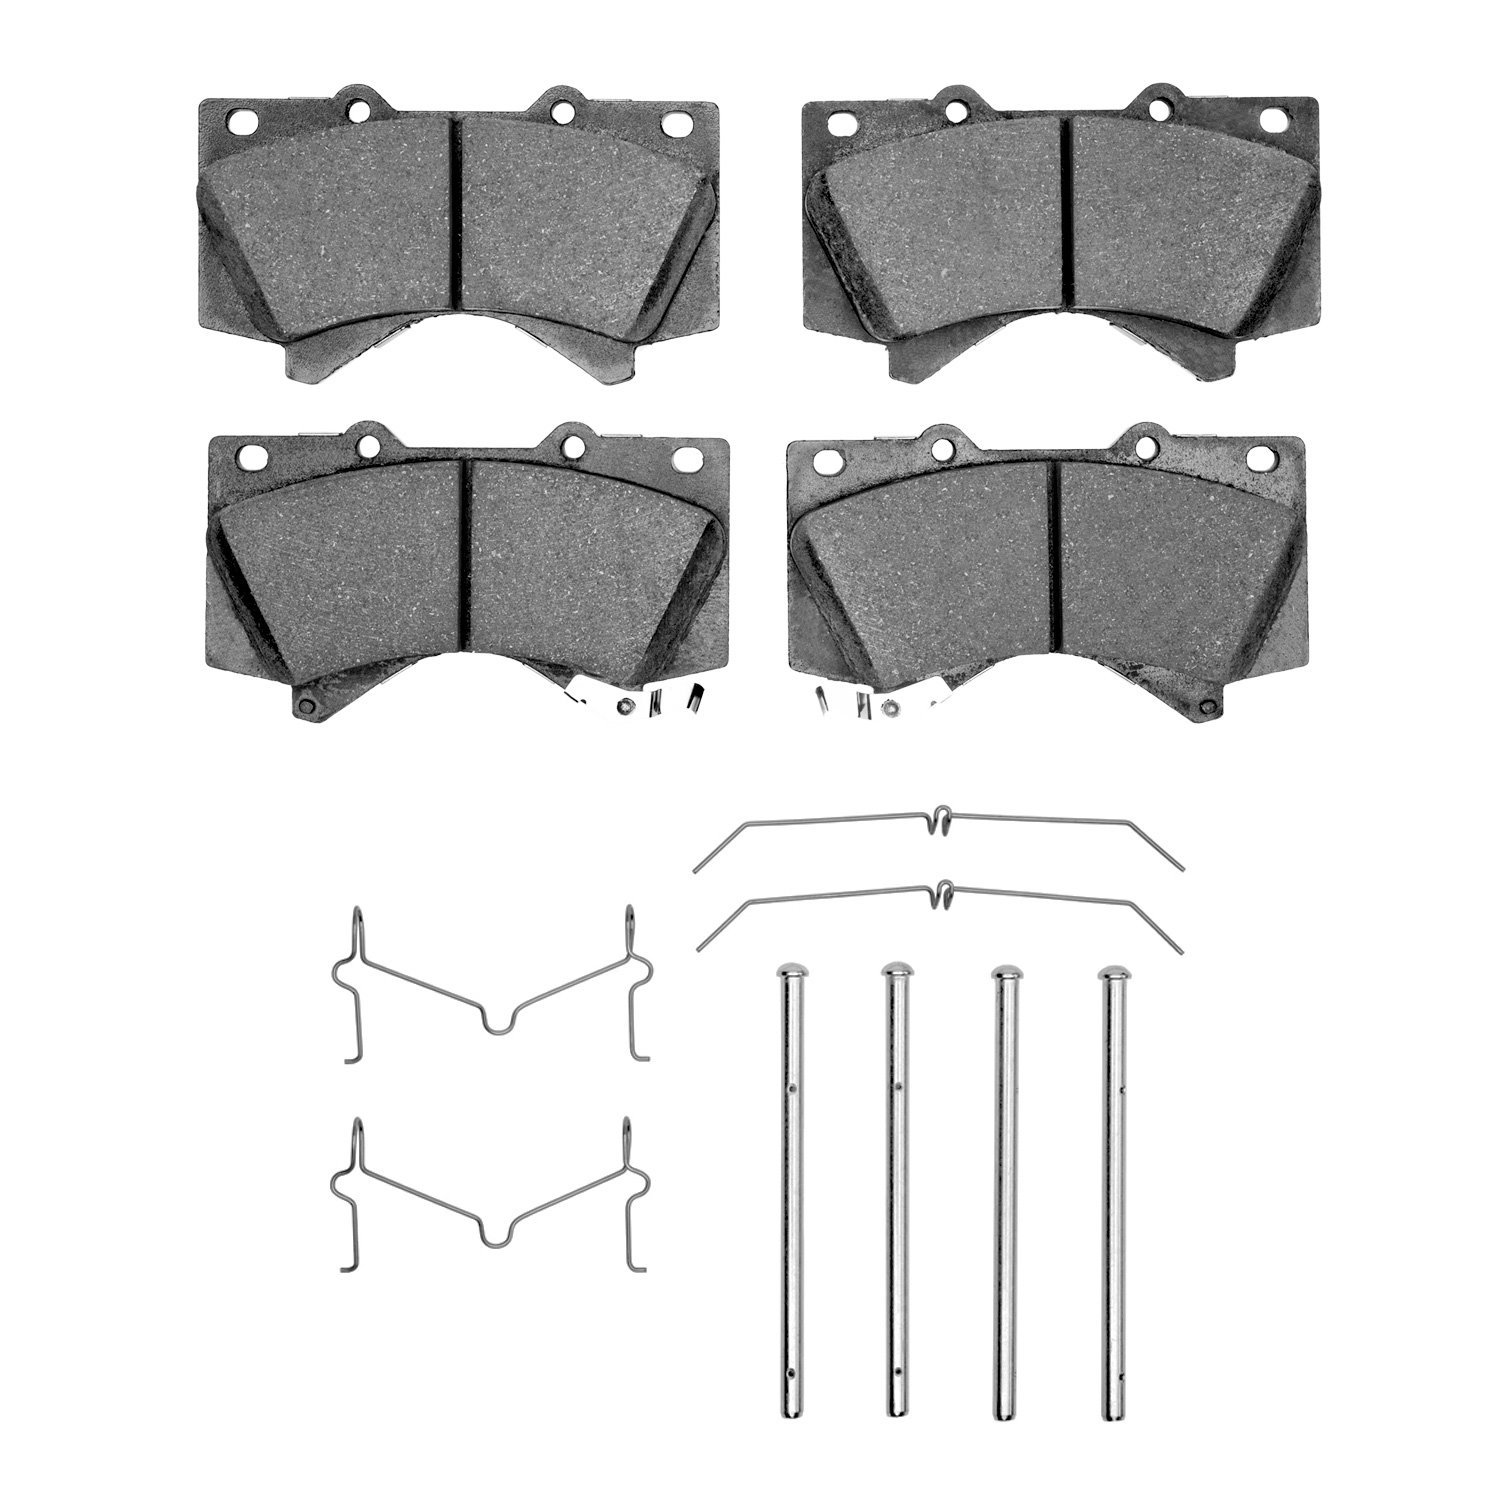 3000-Series Semi-Metallic Brake Pads & Hardware Kit, Fits